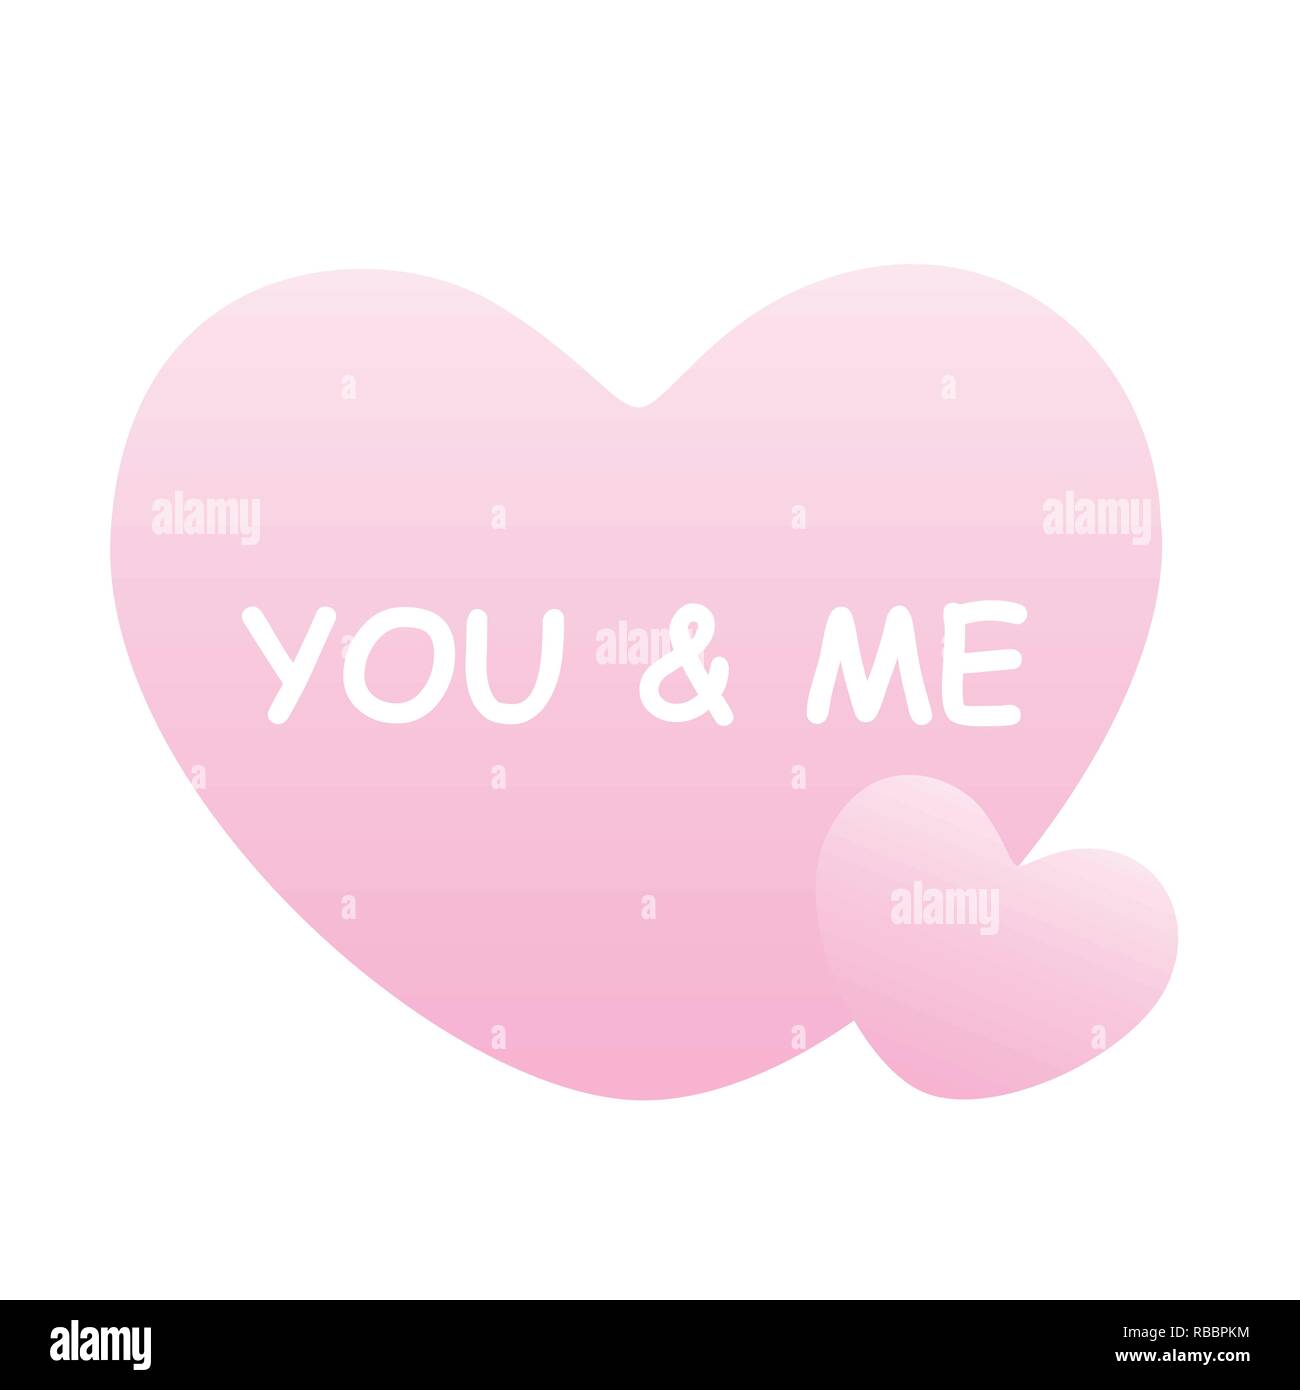 Sie und ich hell rosa Herzen auf weißem Hintergrund Vektor-illustration EPS 10. Stock Vektor